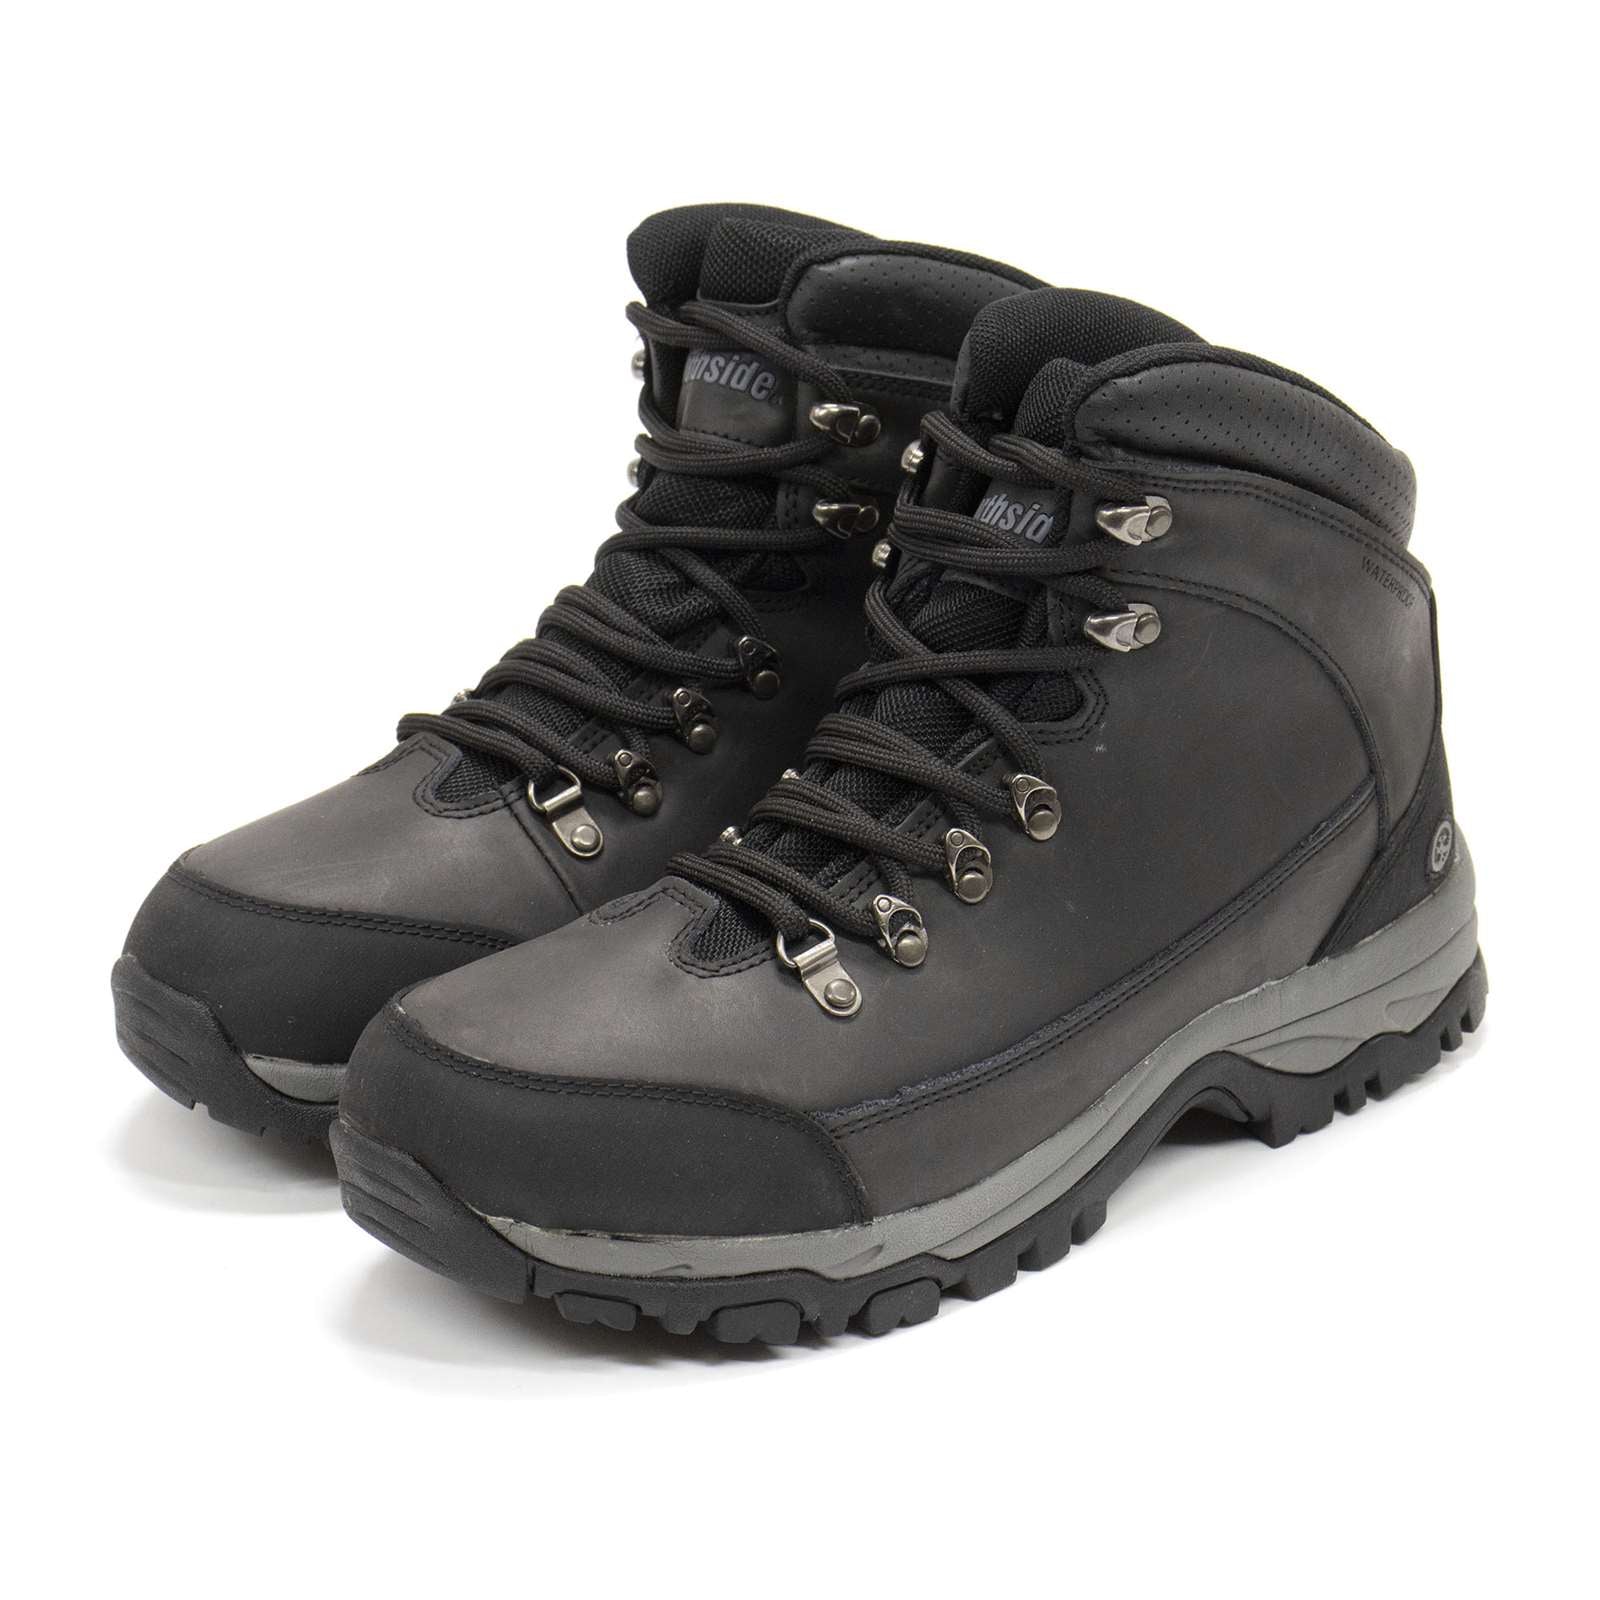 Northside Men Mckinley Waterproof Hiking Boots